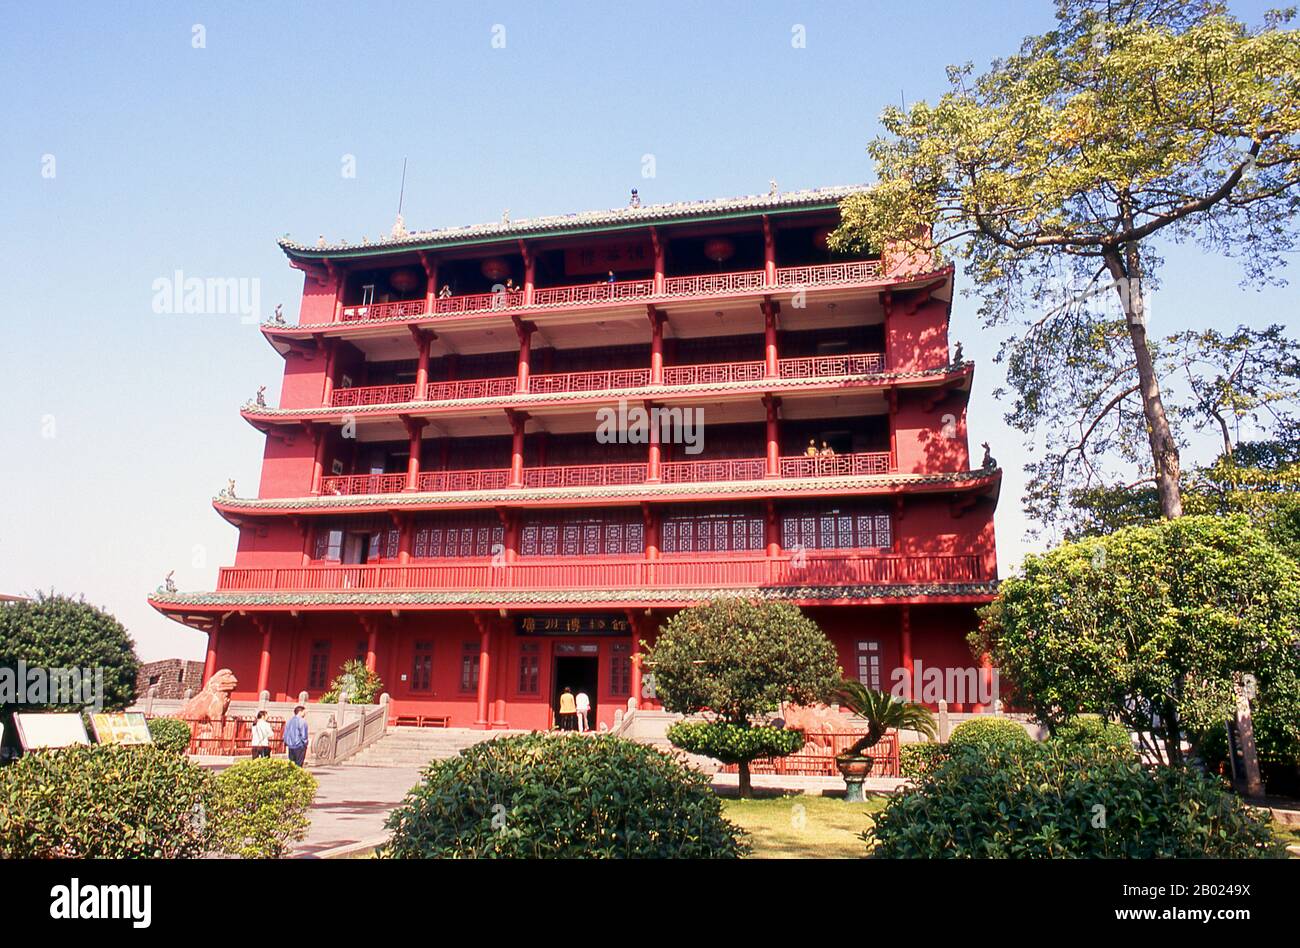 Der größte Park von Guangzhou, Yuexiu Gongyuan, wird von Zhenhai Lou (Turm Mit Blick auf das Meer) dominiert. Der Turm wurde als Denkmal für die sieben großen Seefahrten zwischen 1405 und 1433 vom Eunuchen Admiral Zheng He erbaut. Zheng reiste nach Ostafrika, in den Persischen Golf und nach Java. Stockfoto